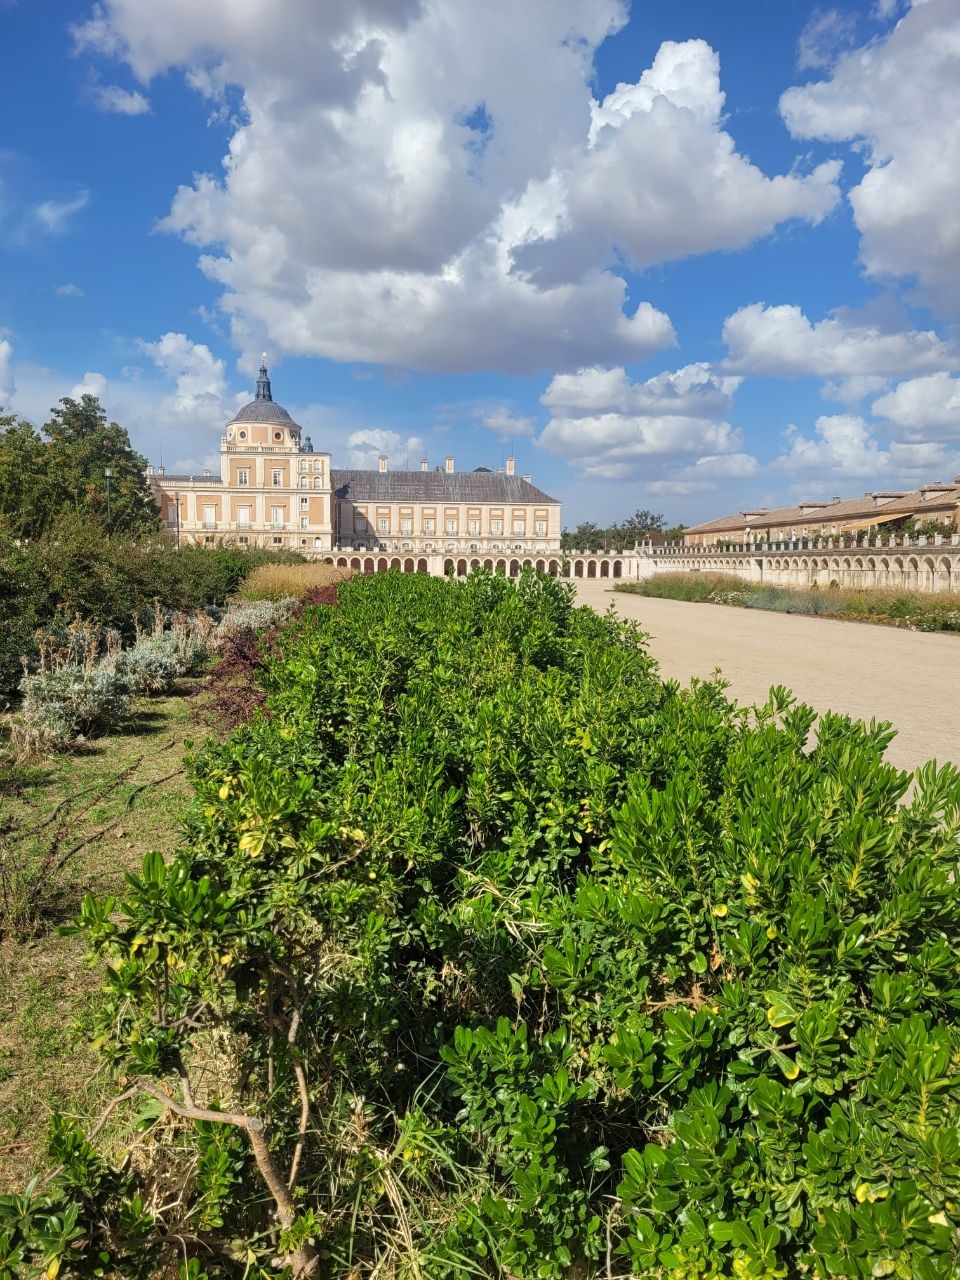 Испанский Версаль в Аранхуэсе